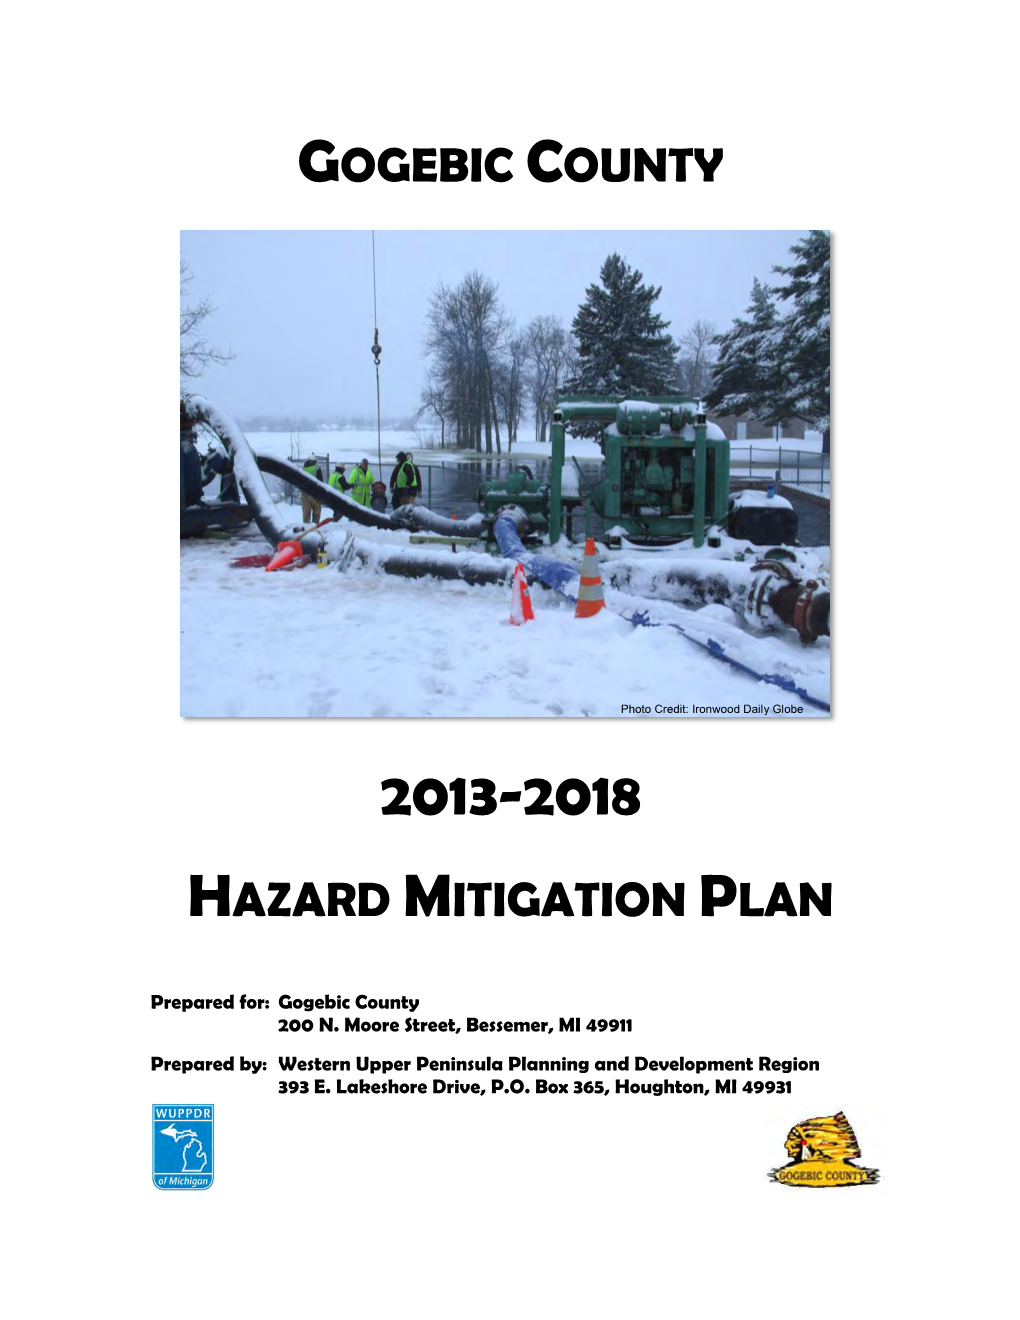 Gogebic County Hazard Mitigation Plan